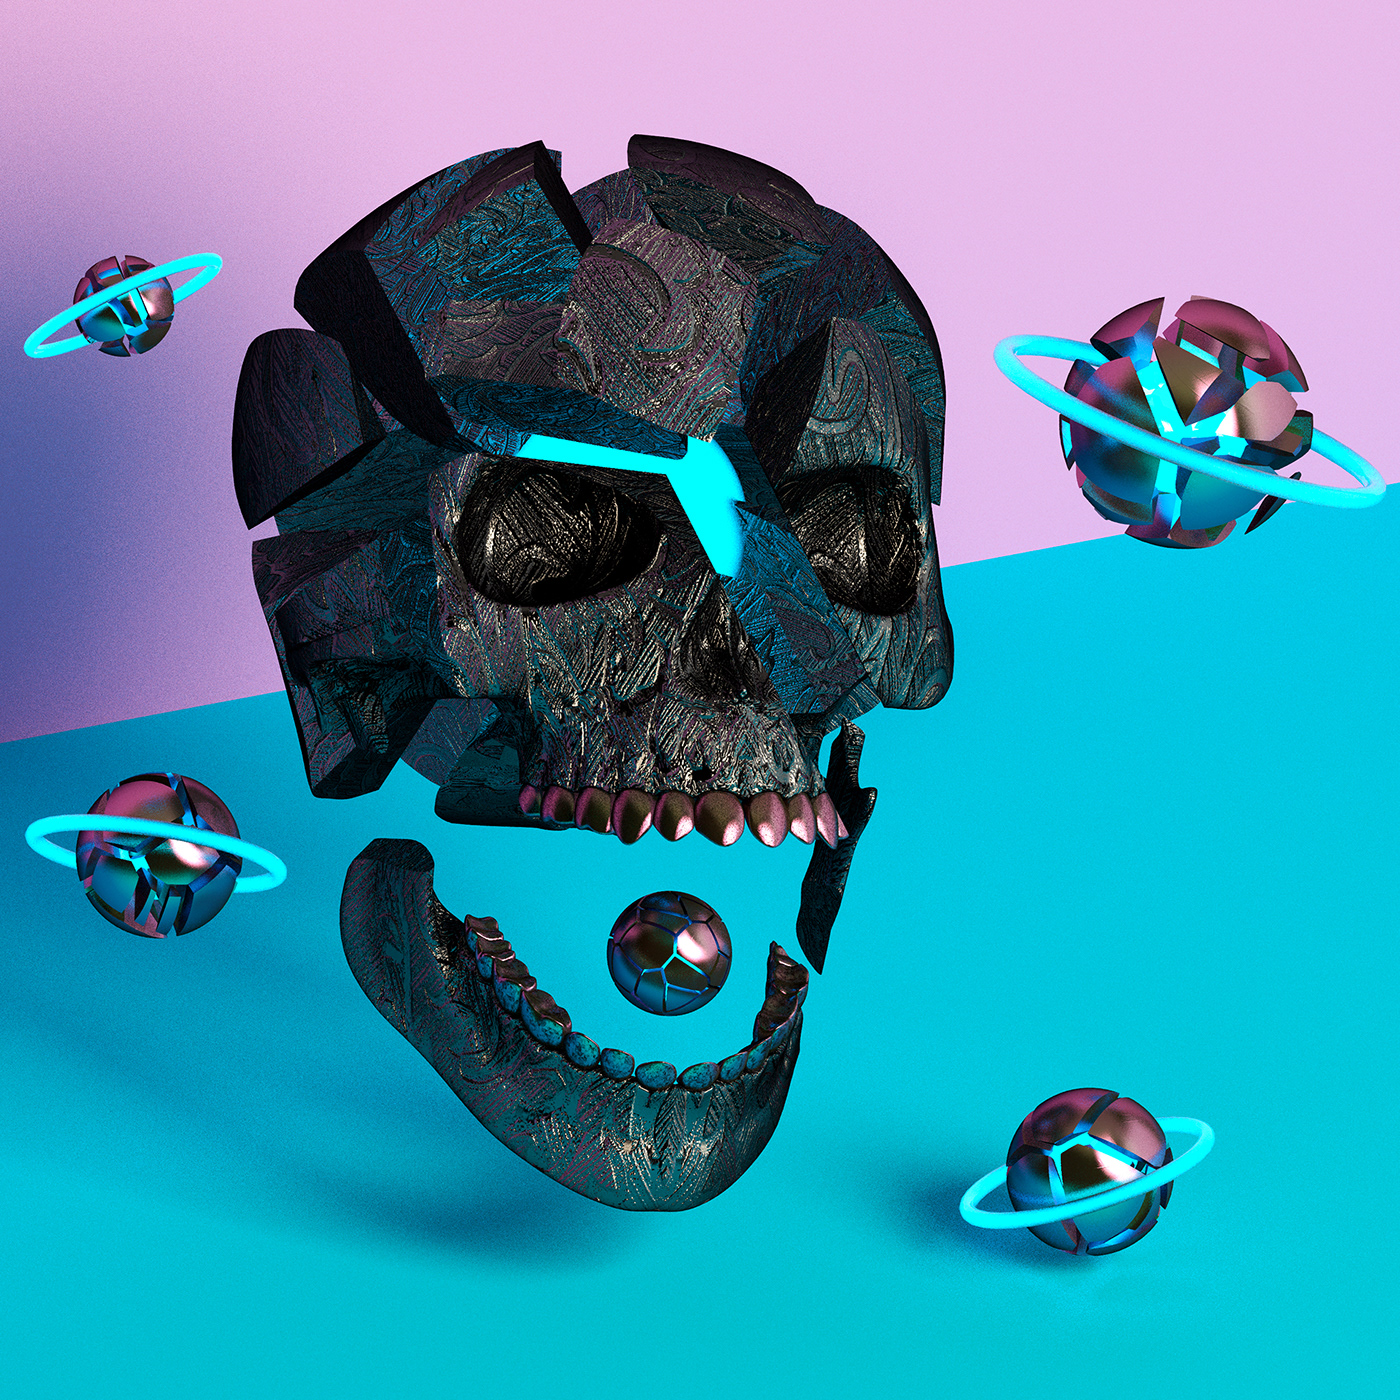 c4d adobe abstract 3D skull fluid metal gold neon vivid